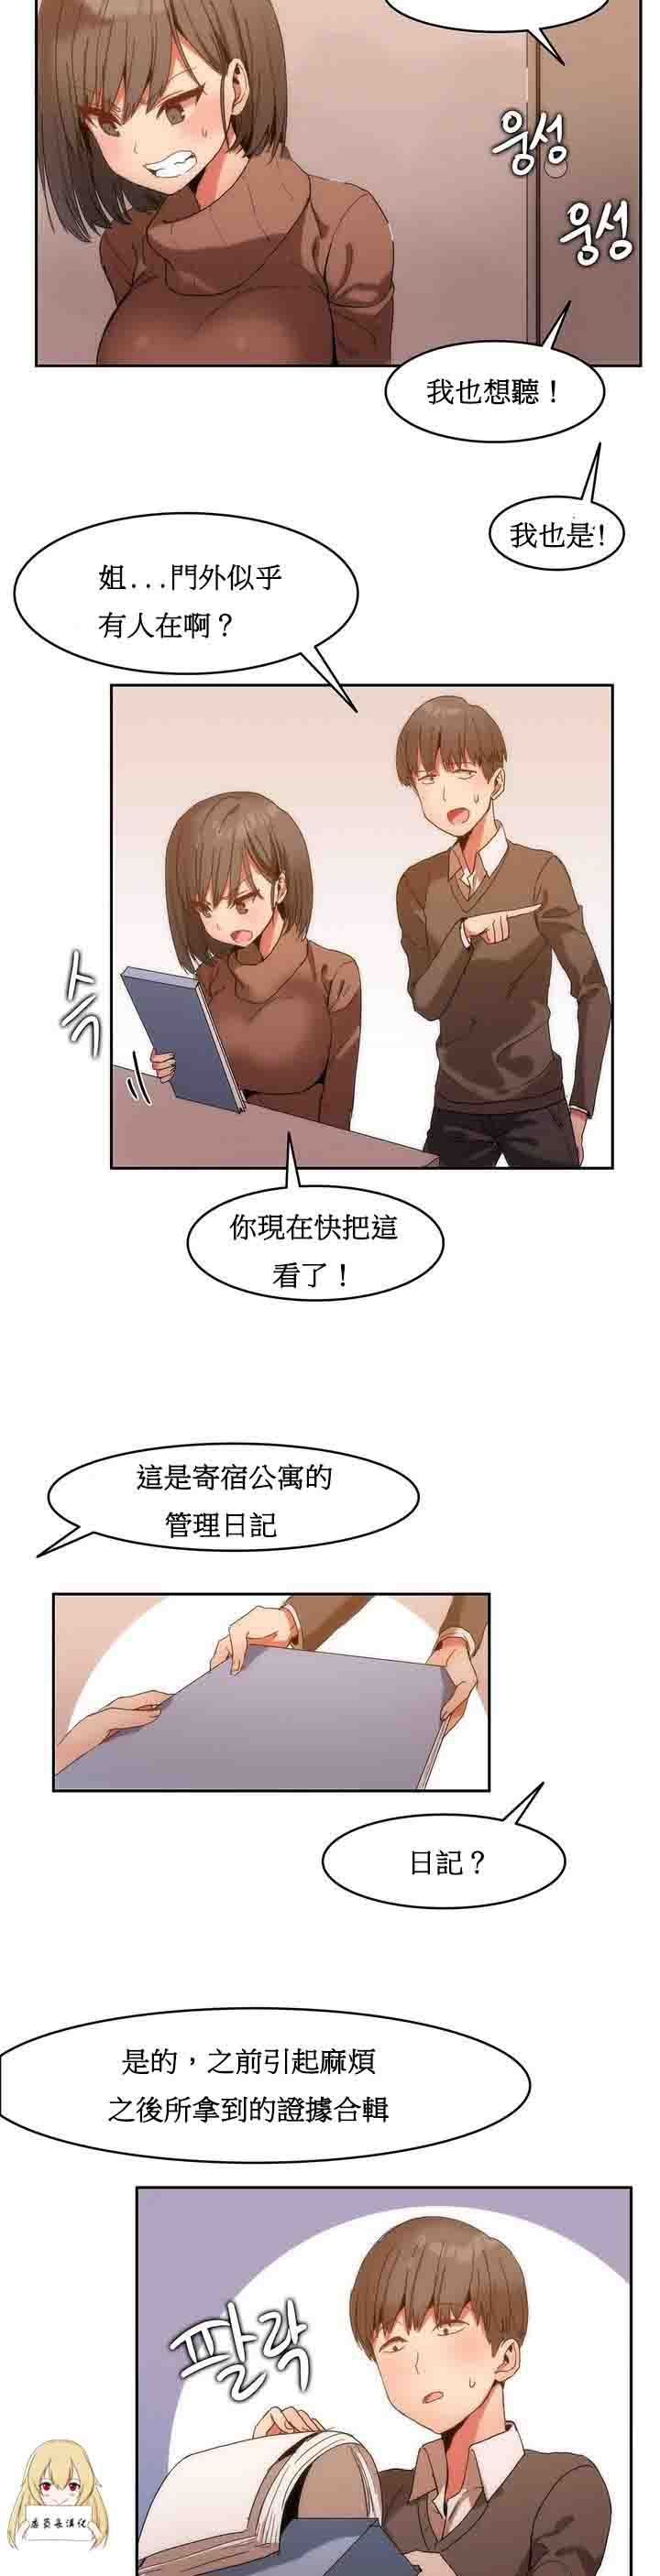 韩国污漫画 寄宿公寓-陰氣之洞 第1话 24